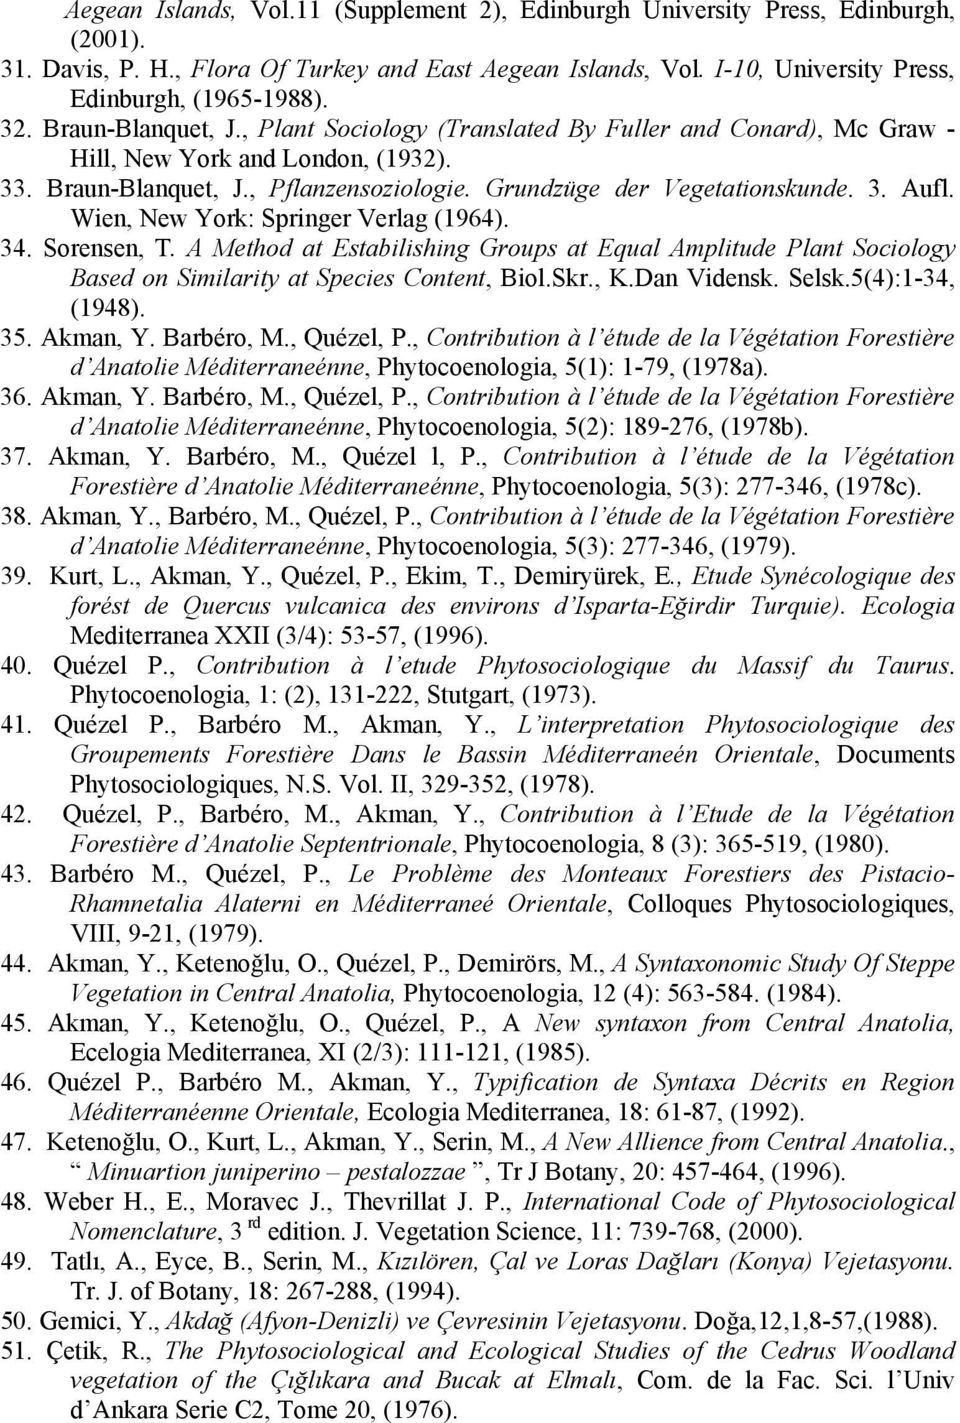 New York: Springer erlag (1964) 34 Sorensen, T A Method at Estabilishing Groups at Equal Amplitude Plant Sociology Based on Similarity at Species Content, BiolSkr, KDan idensk Selsk5(4):1-34, (1948)